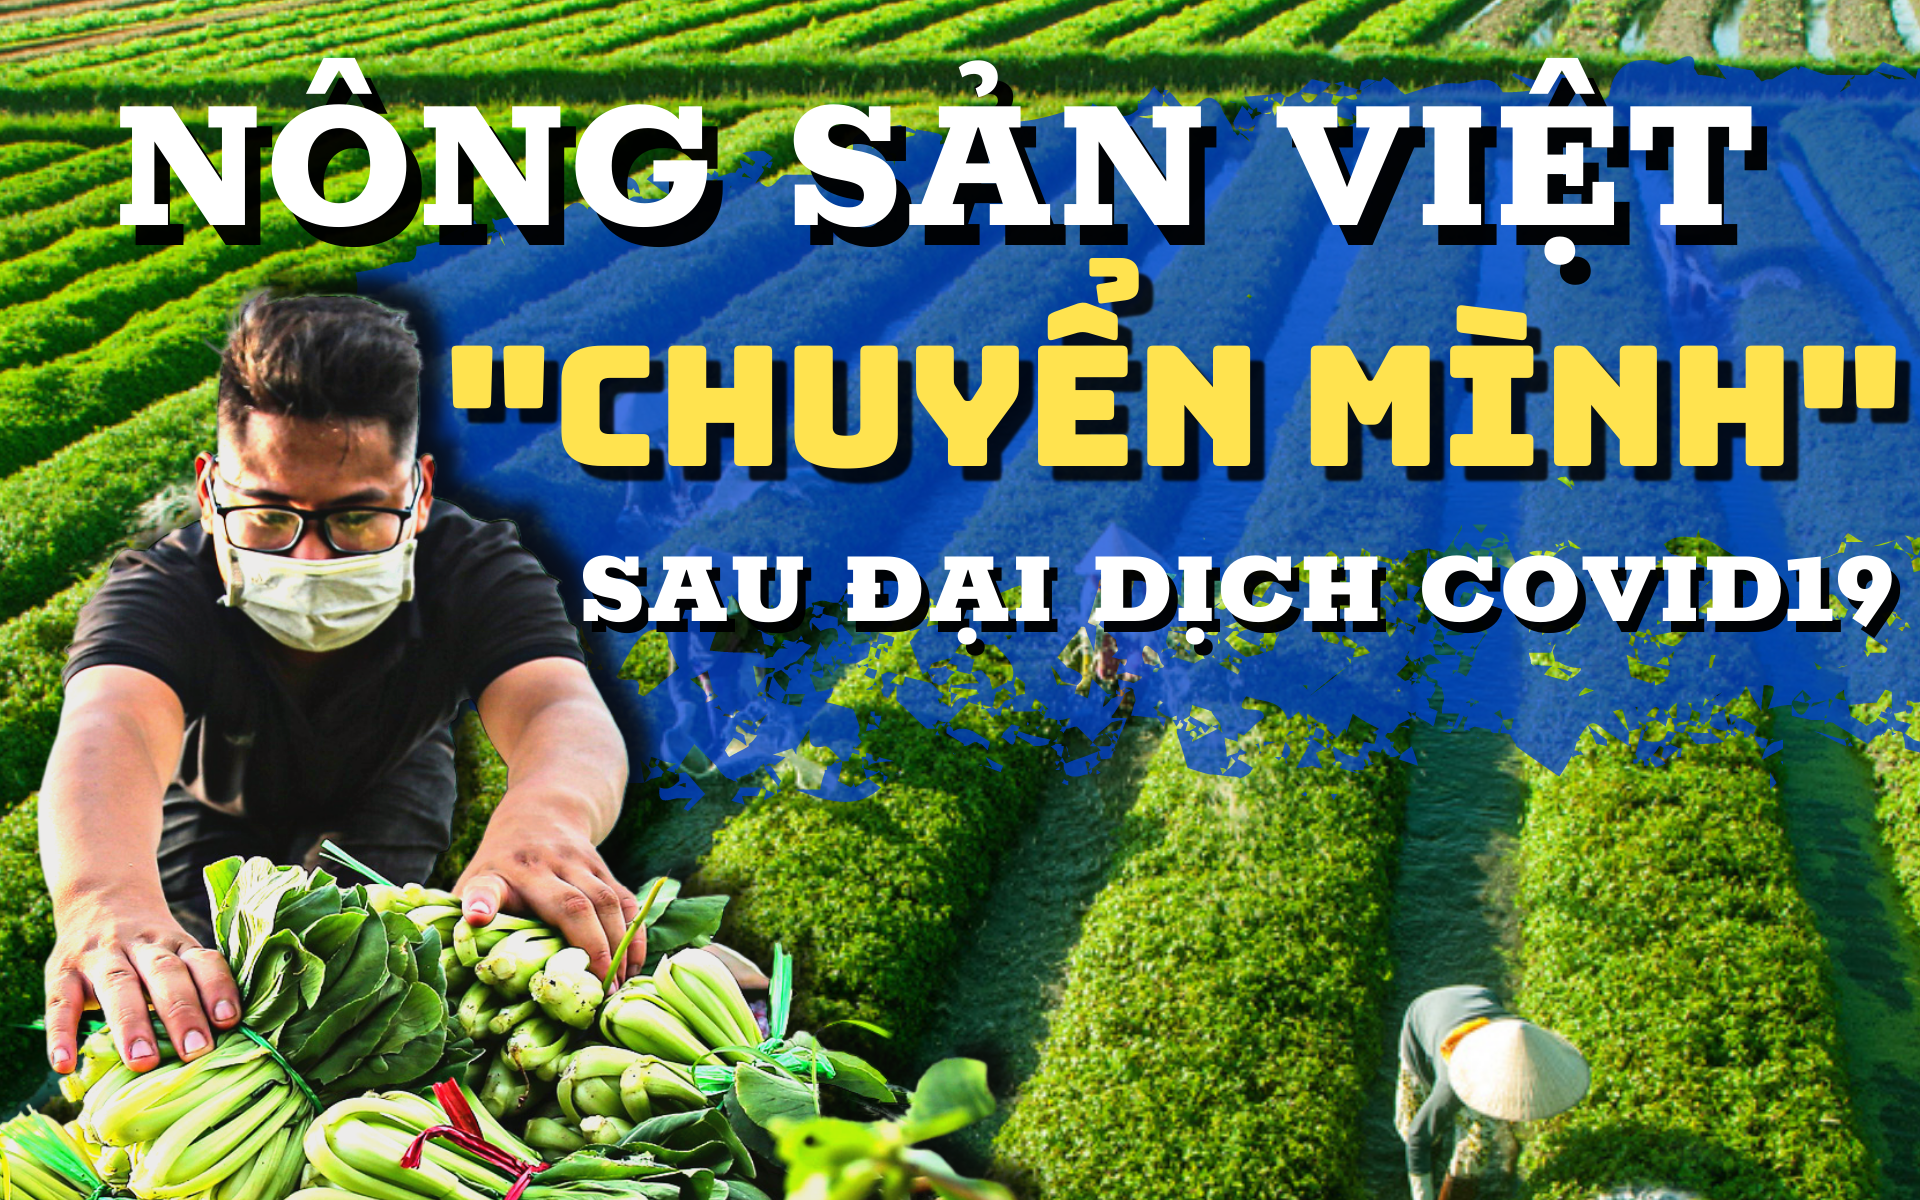 Toàn cảnh bức tranh nông sản Việt “chuyển mình” sau đại dịch Covid-19